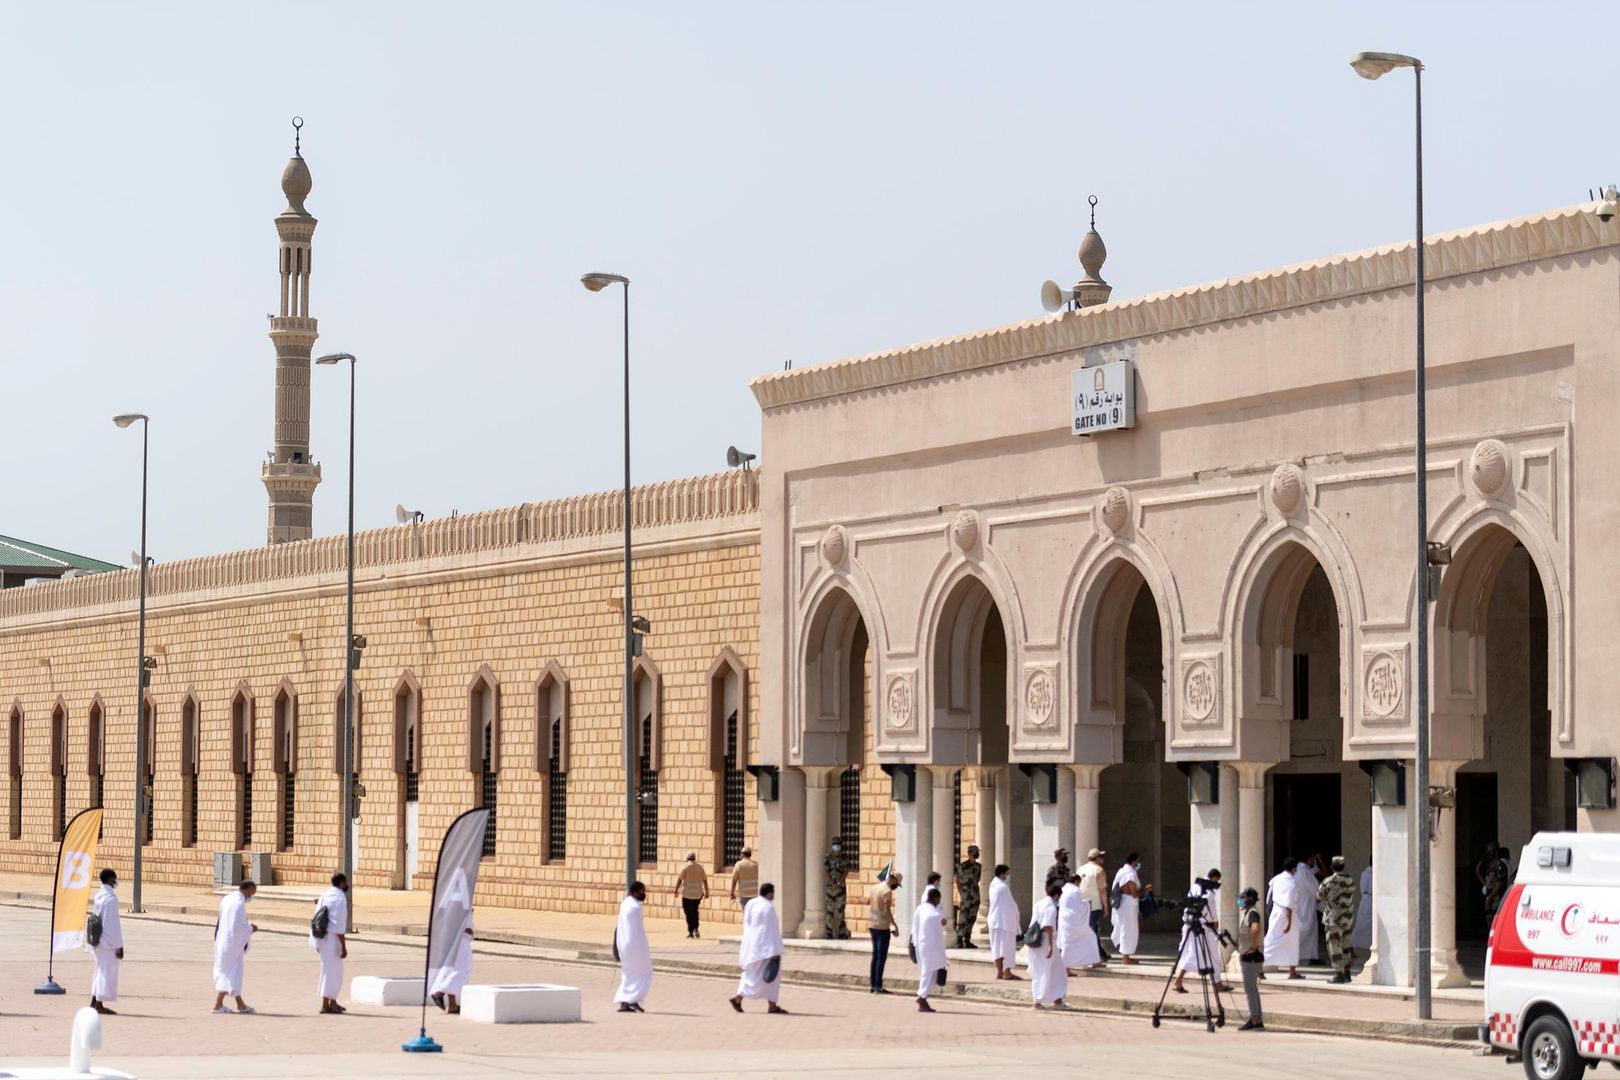 بعد تفشي الإصابات بكورونا ووفاة مؤذن في السعودية.. إغلاق 10 مساجد بالمملكة